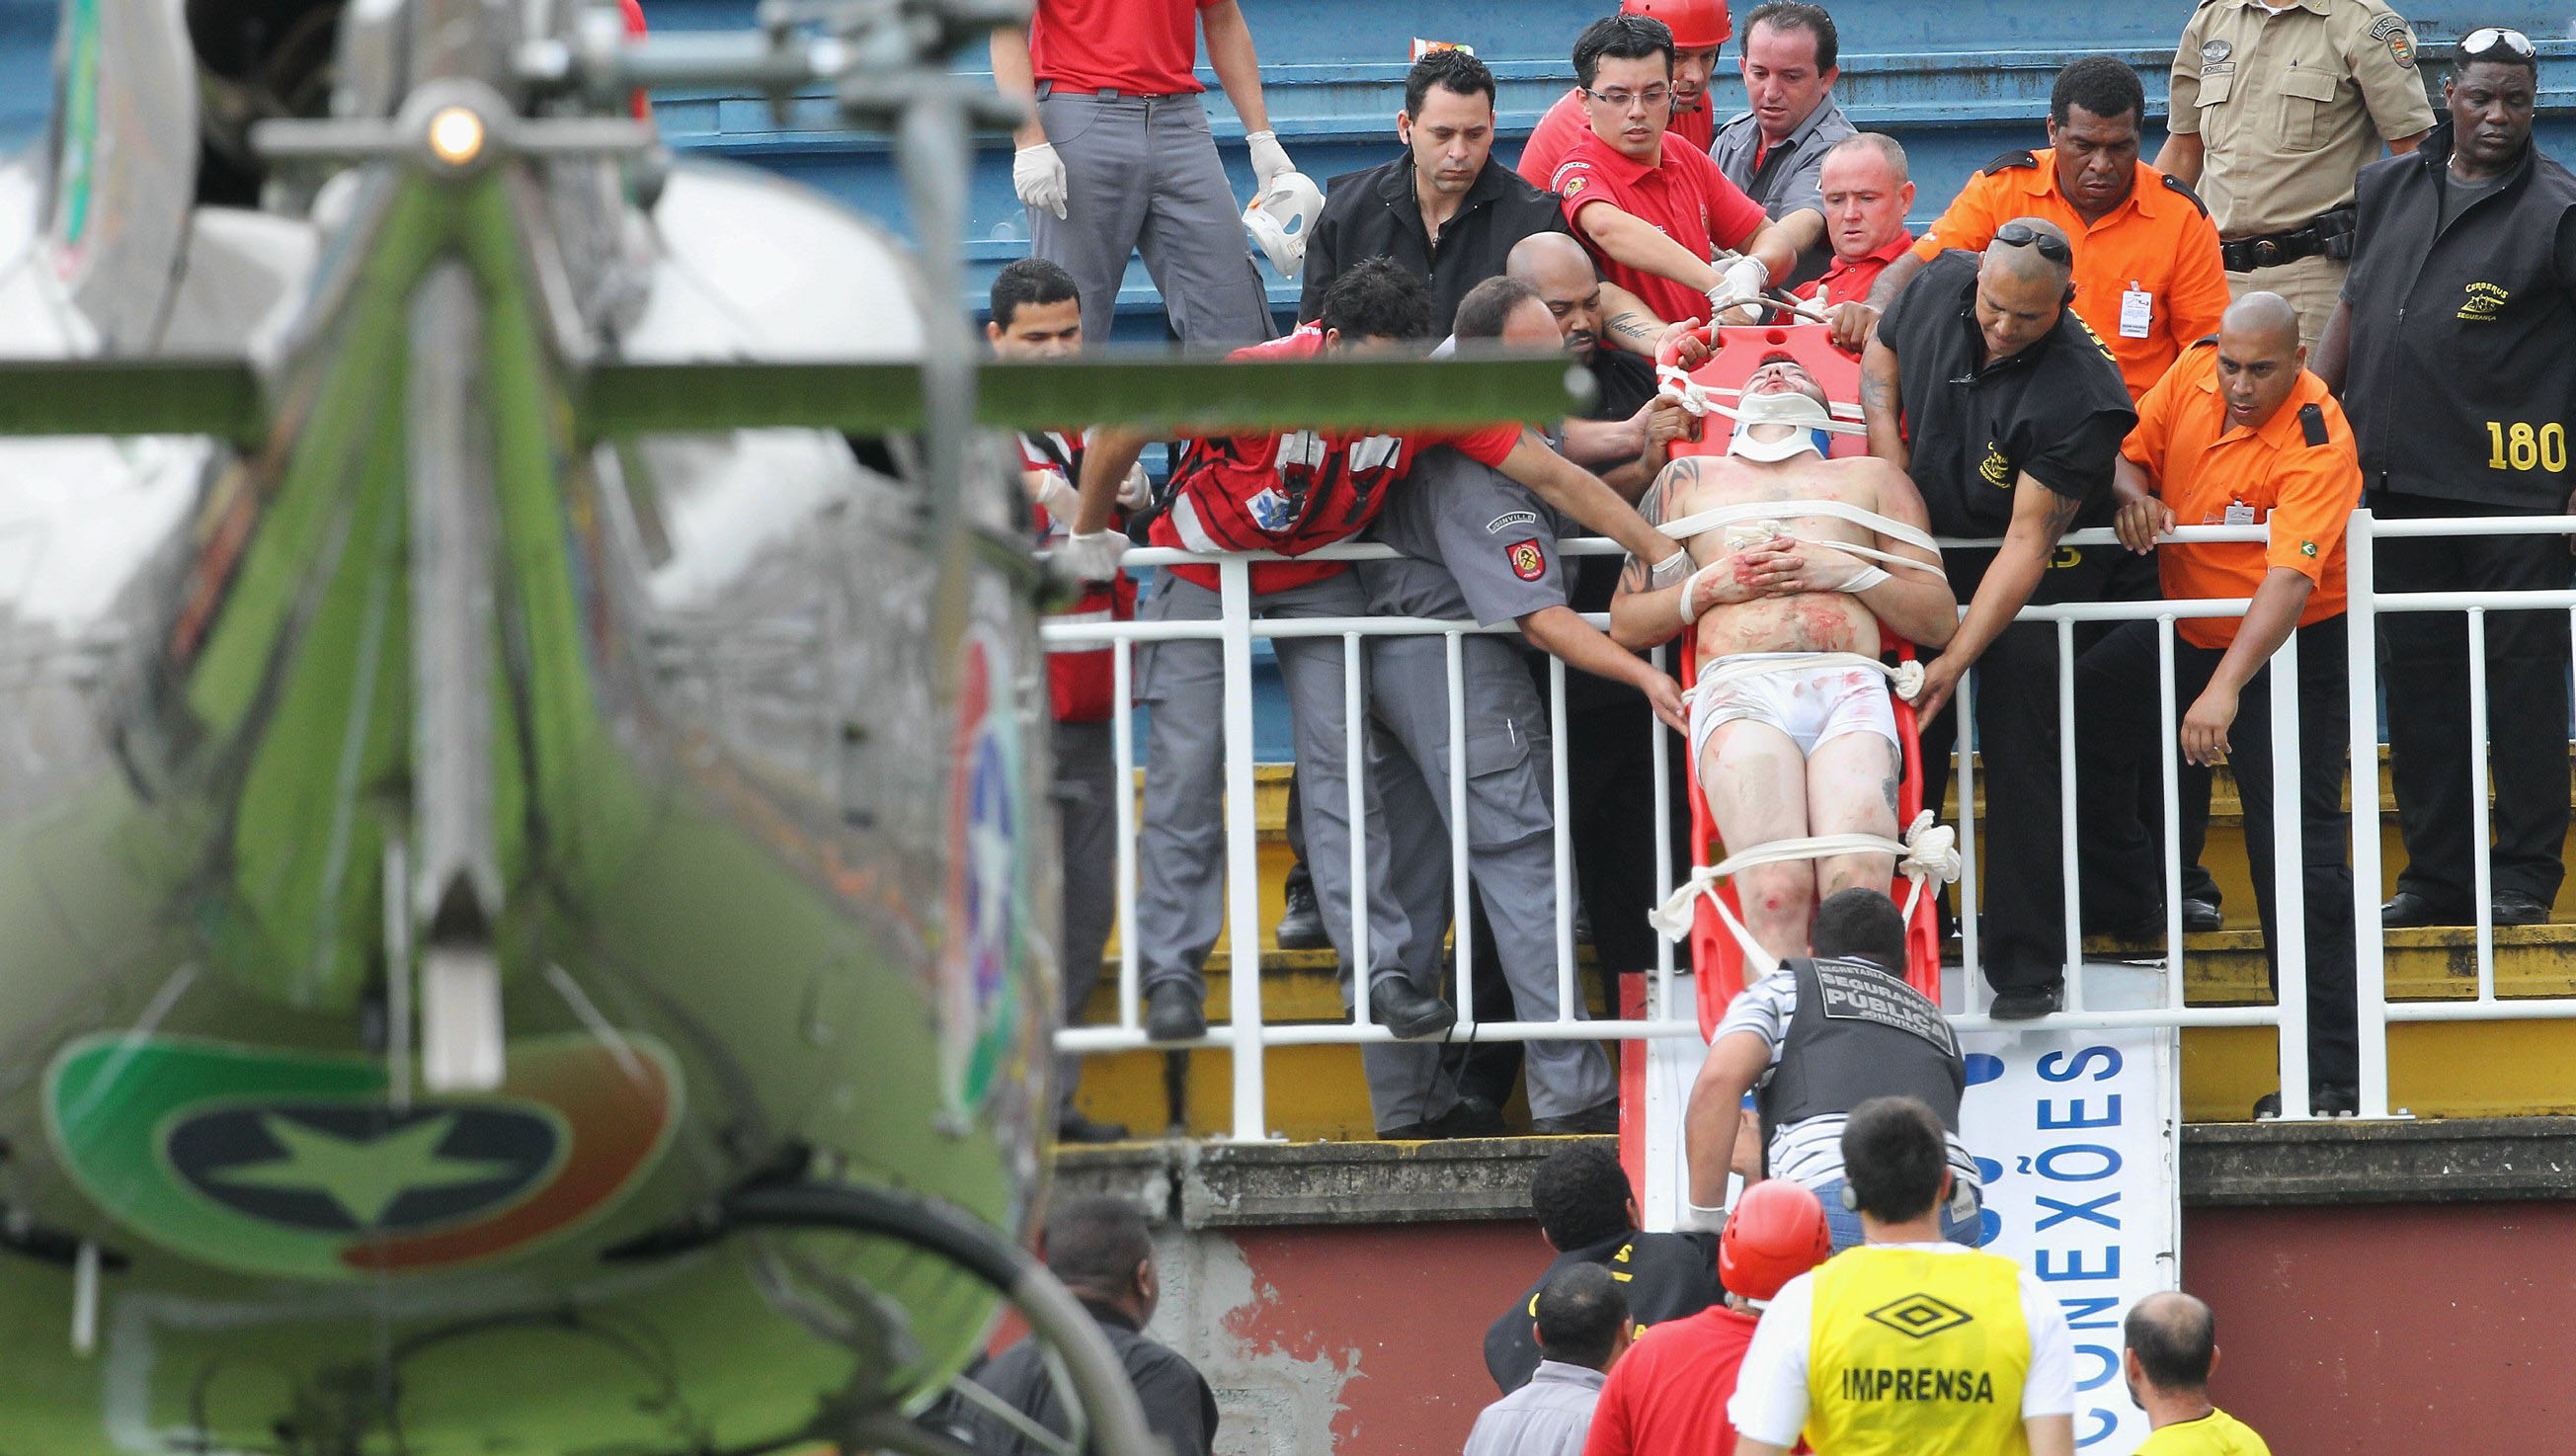 Fyra personer uppges vara allvarligt skadade efter skandalscenerna i Brasilien. 